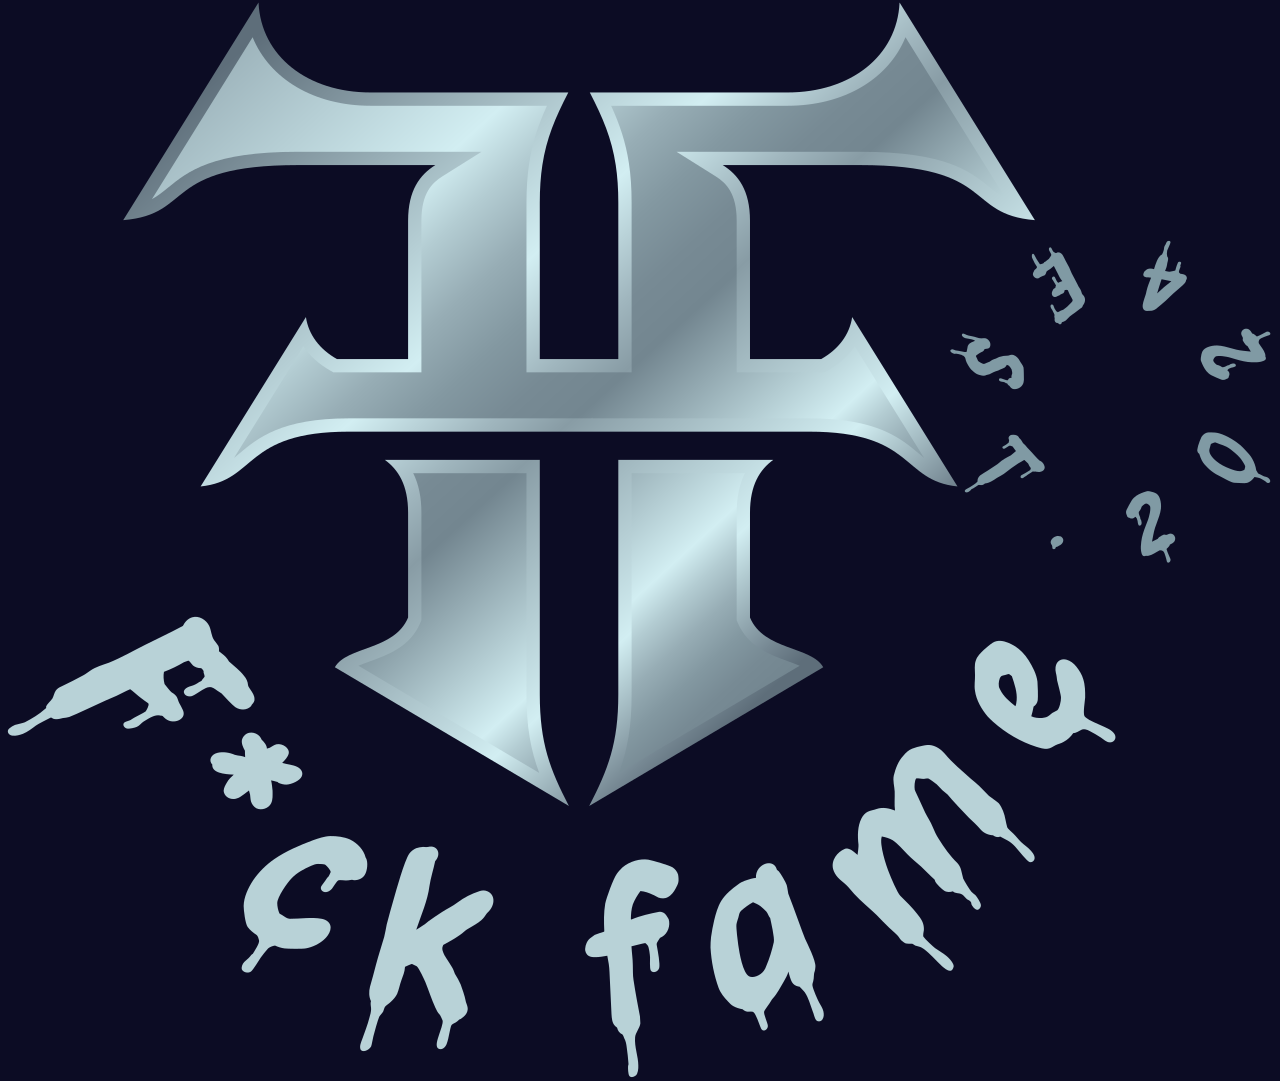 F*ck fame's logo